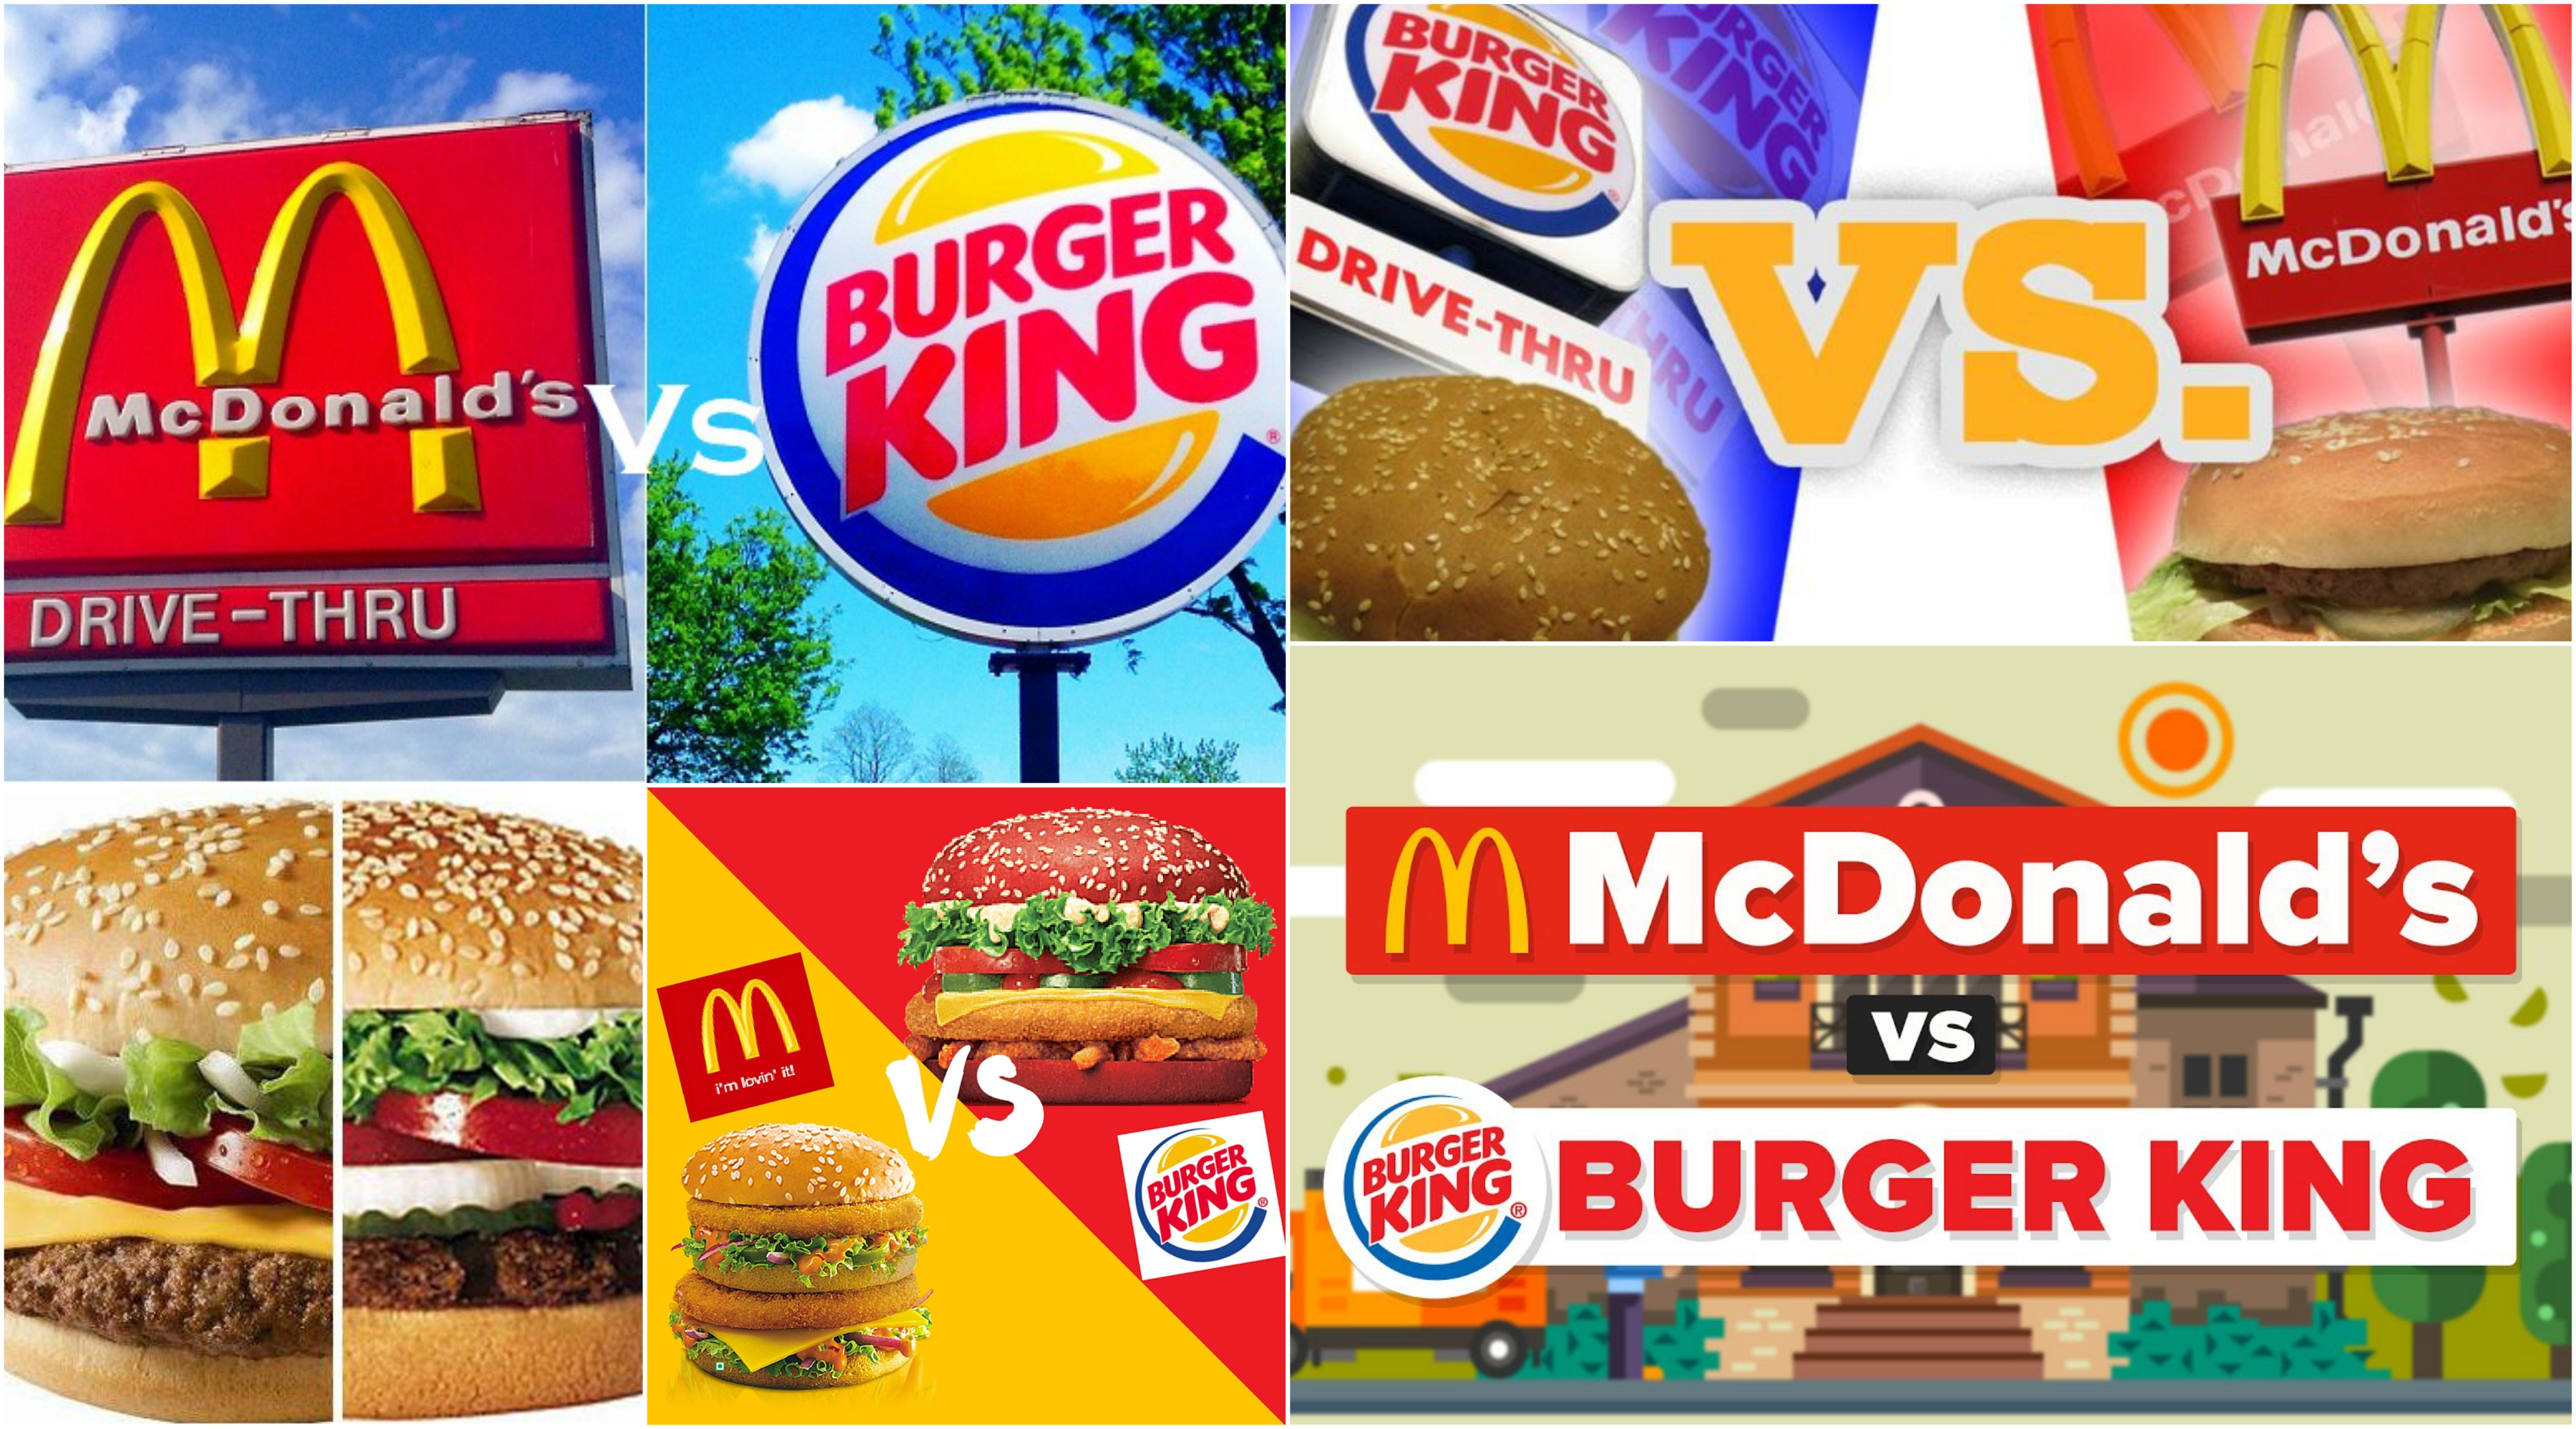 McDonalds vs Burger King, ¿quién tiene la mejor hamburguesa?